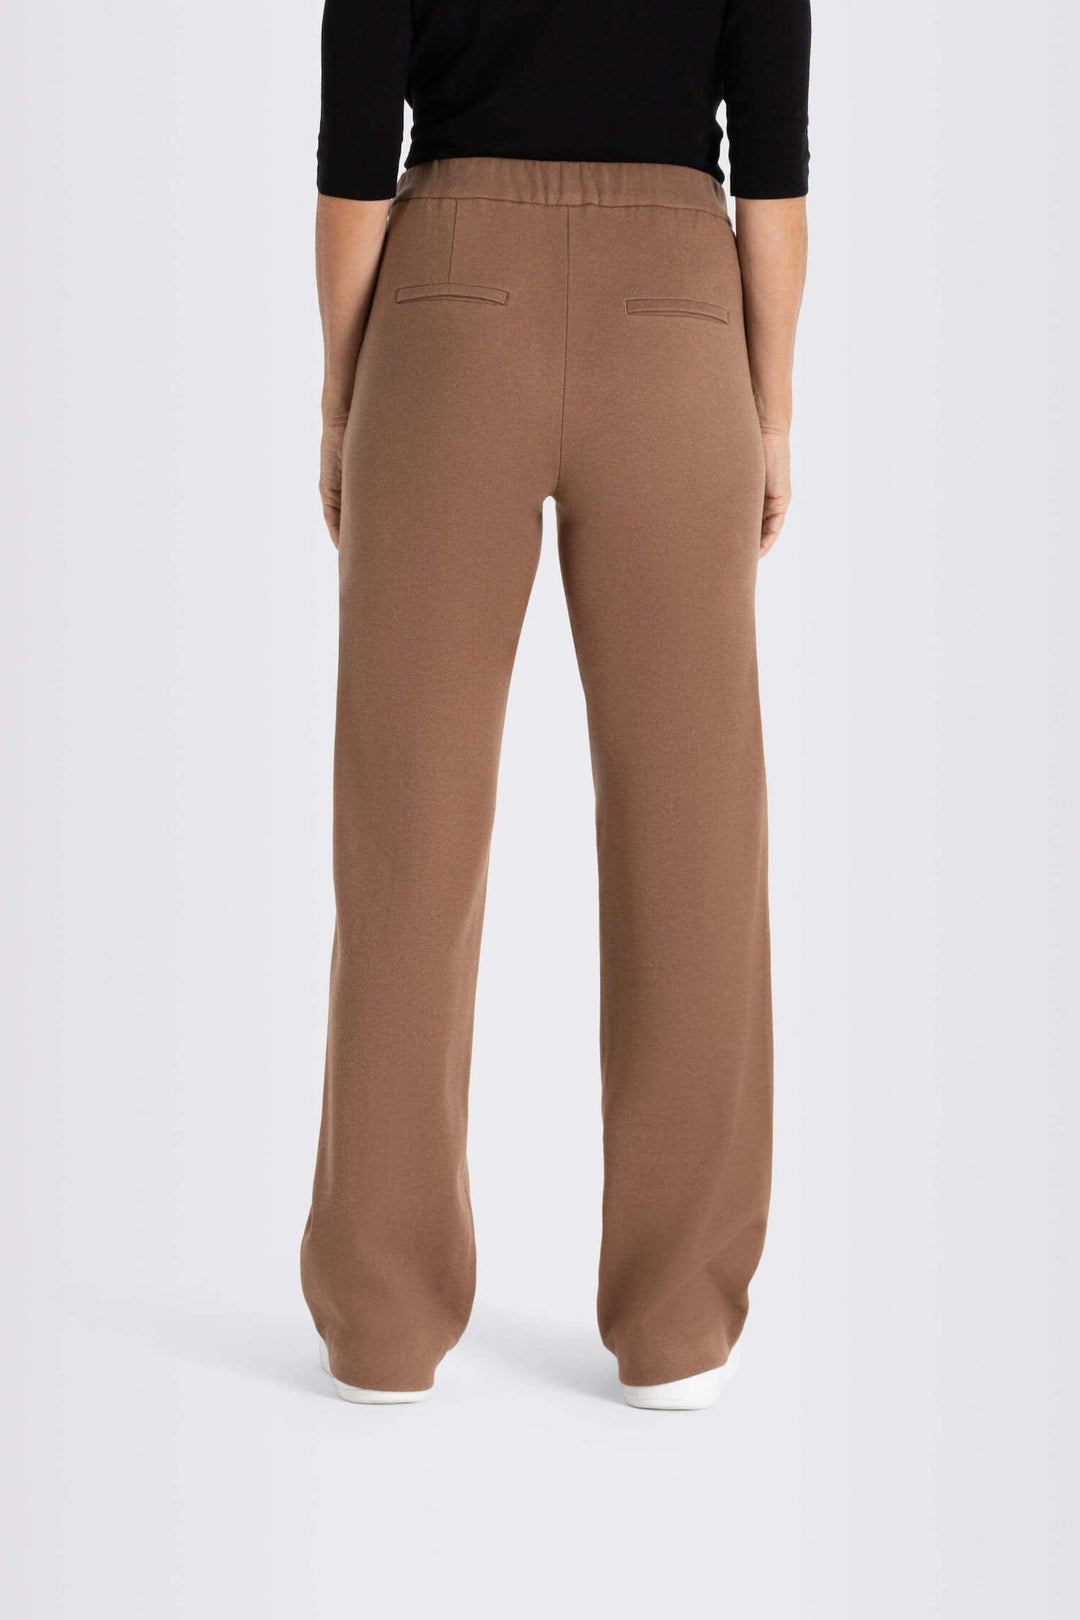 Pantalon Chiara Femme - Bas - Pantalon Mac Jeans